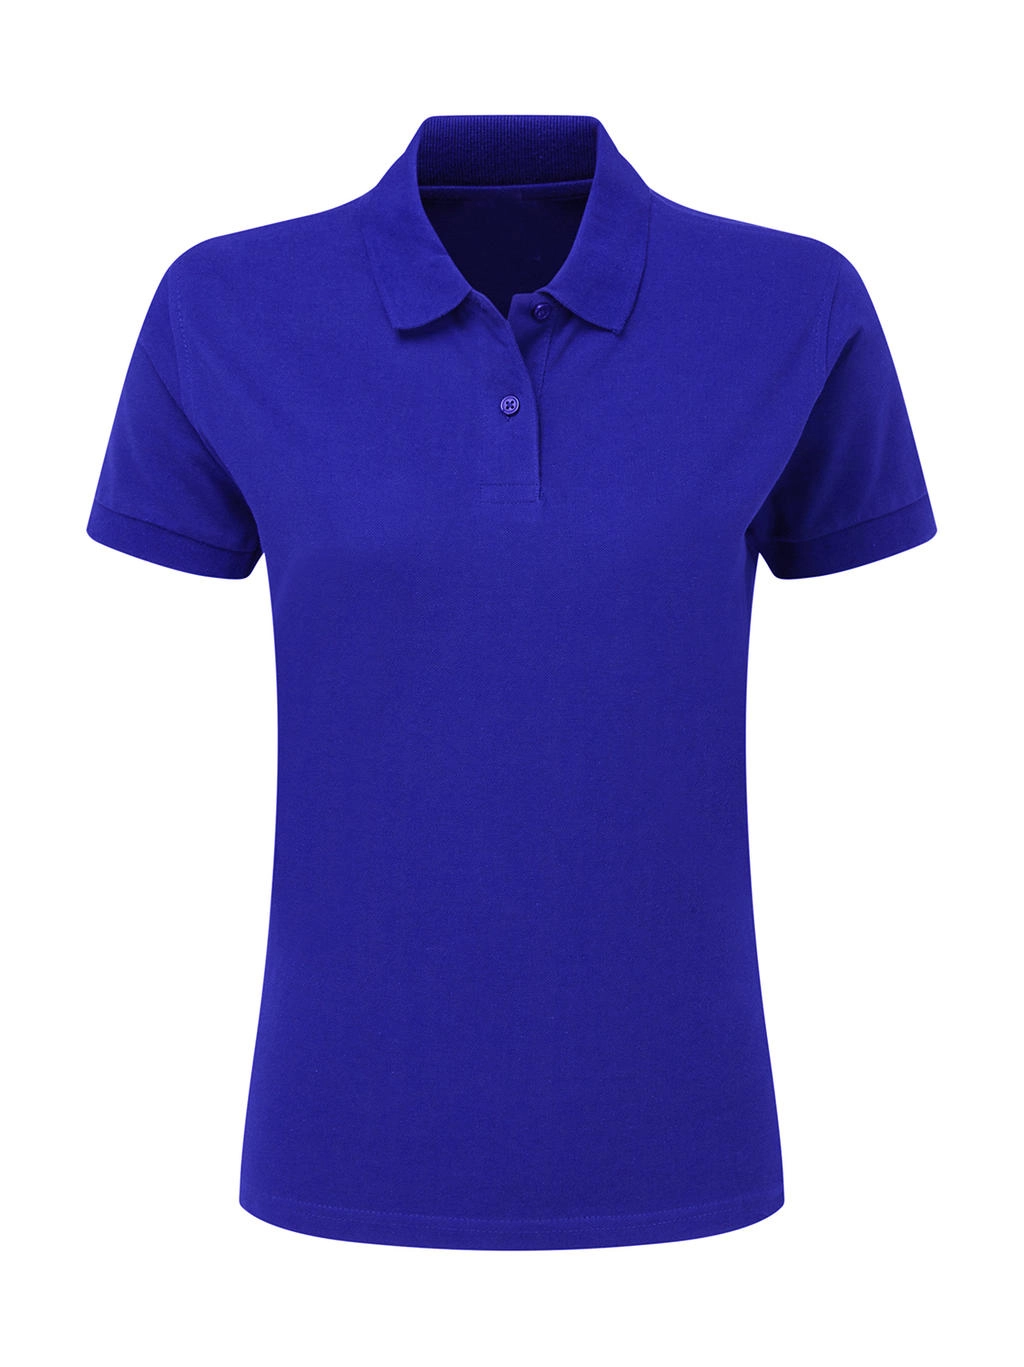 Cotton Polo Women zum Besticken und Bedrucken in der Farbe Royal Blue mit Ihren Logo, Schriftzug oder Motiv.